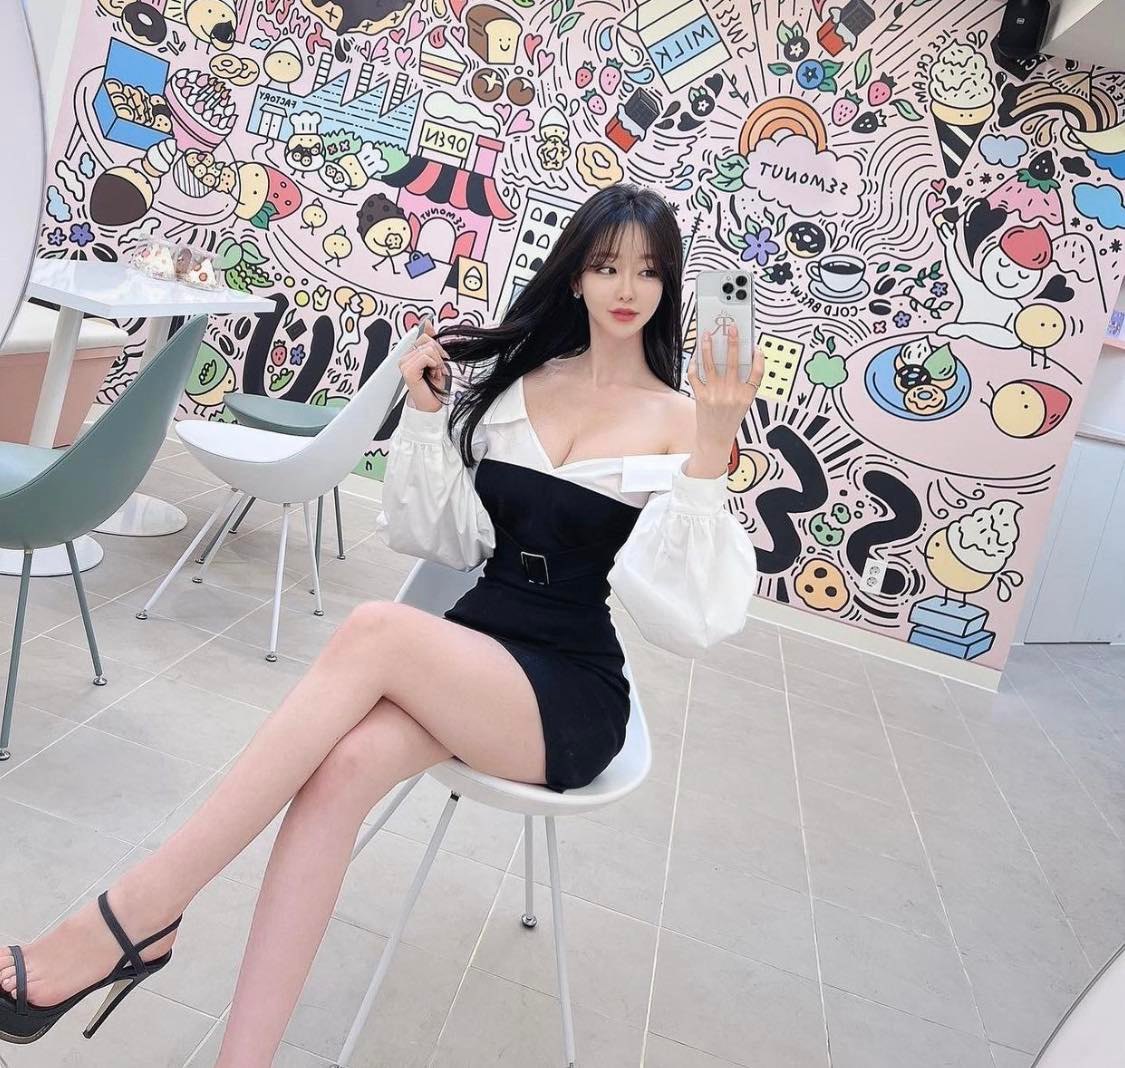 Yoon Jung nổi tiếng trên mạng xã hội vì sở hữu gương mặt cùng thân hình đúng chuẩn đẹp Hàn Quốc. Trước đó, hình ảnh cô nàng diện váy ôm sát cơ thể, khoe khéo body khi đi đổ xăng cũng nhanh chóng nhận được nhiều lượt yêu thích của cư dân mạng&nbsp;